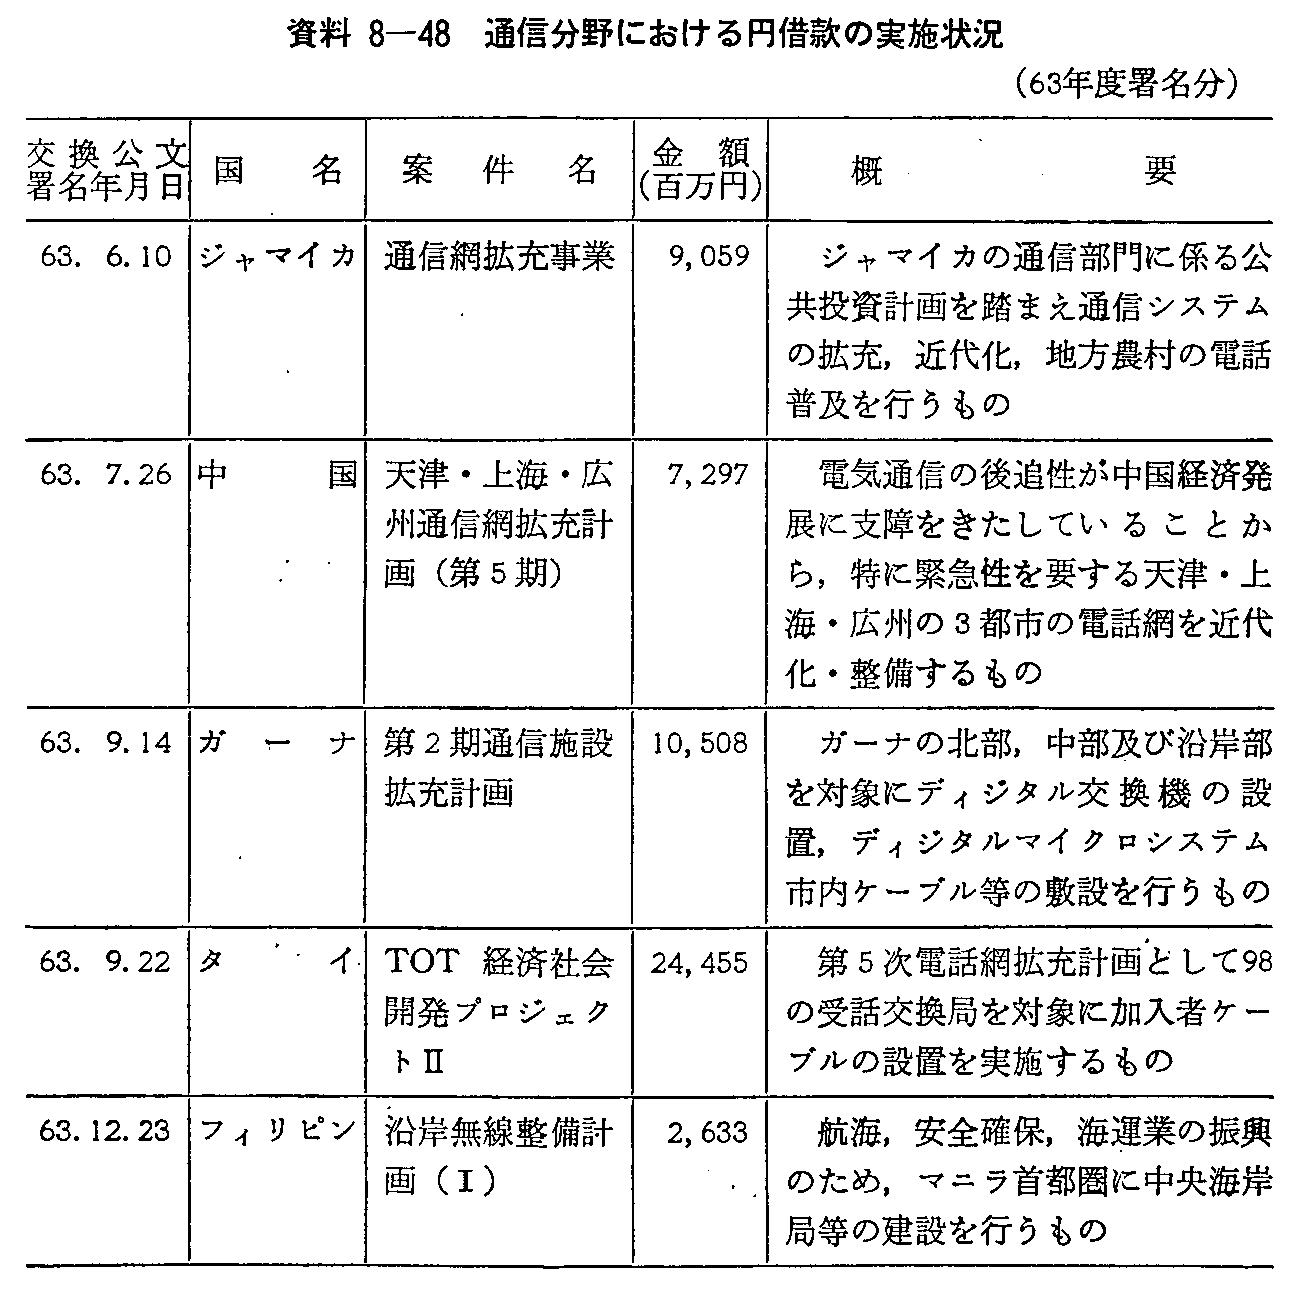 資料8-48 通信分野における円借款の実施状況(63年度署名分)